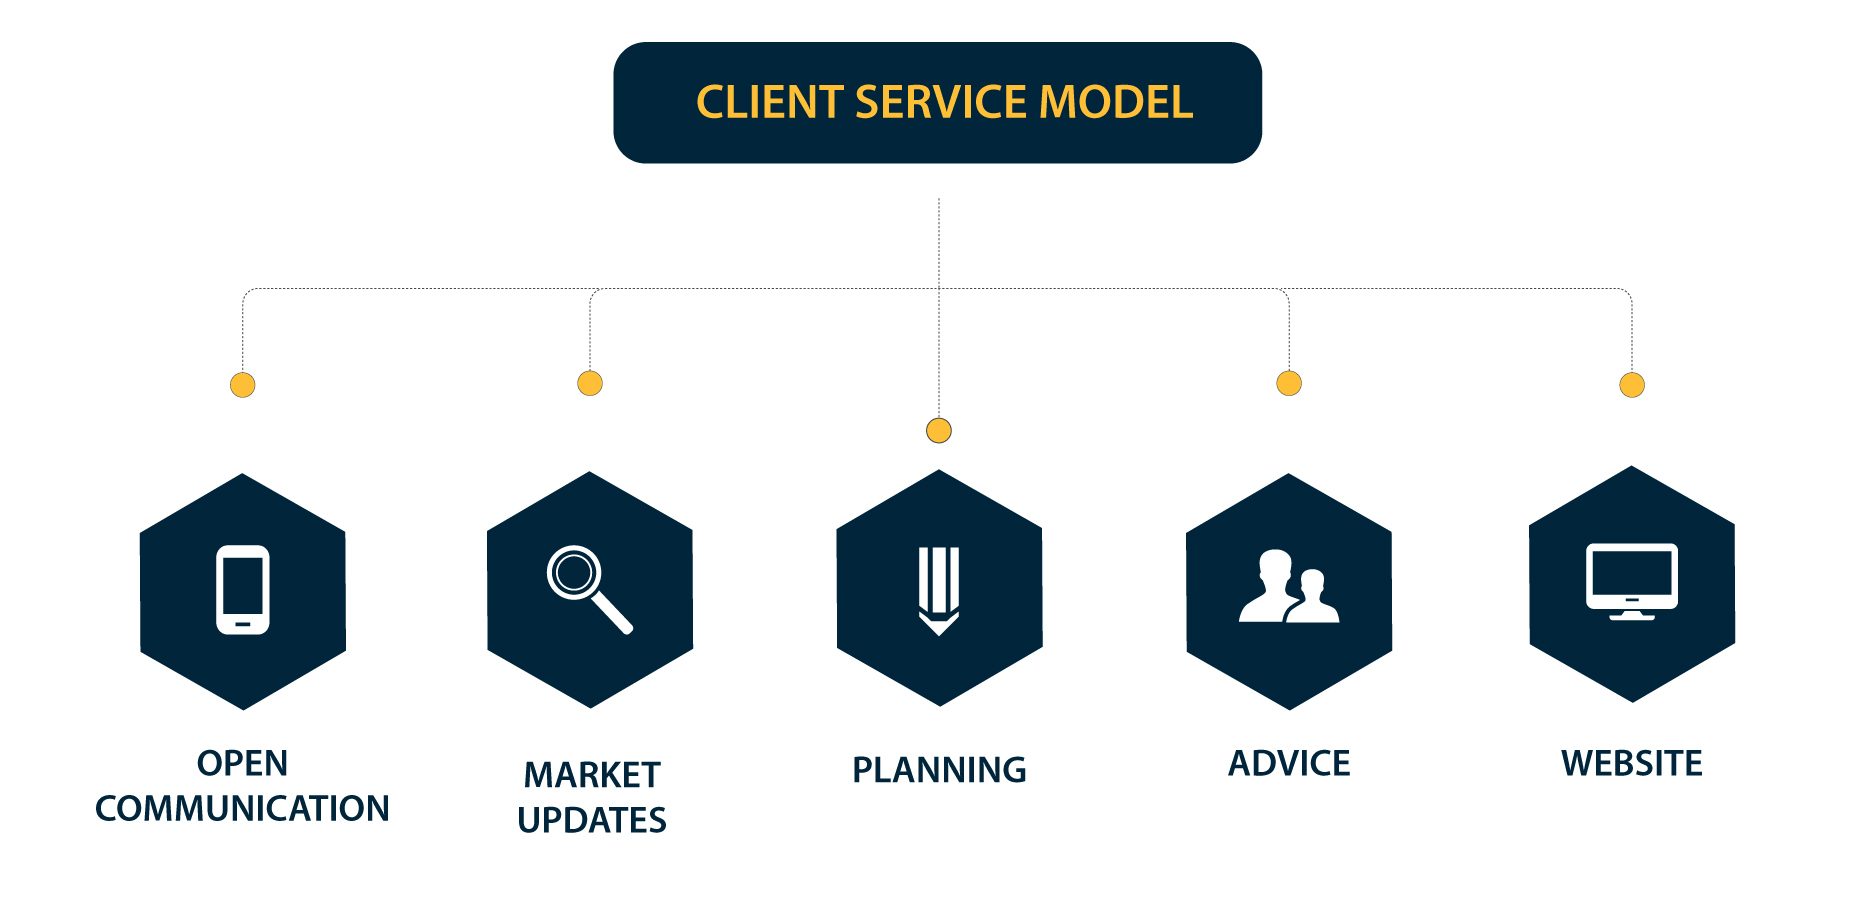 Client Service Model Image